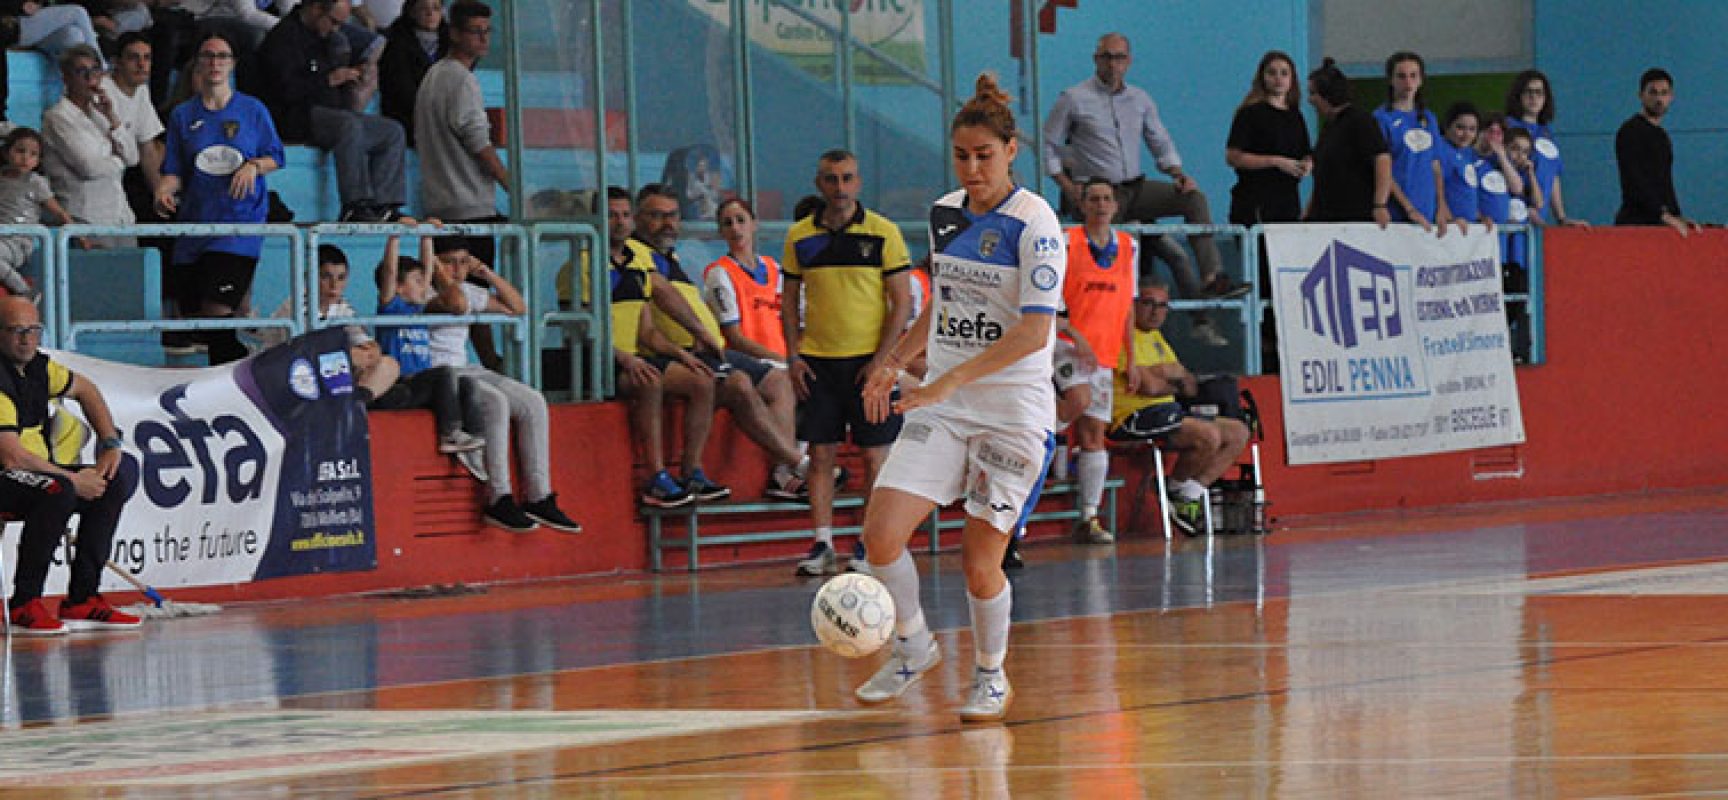 Domani atteso derby playoff tra Bisceglie Femminile e Futsal Molfetta